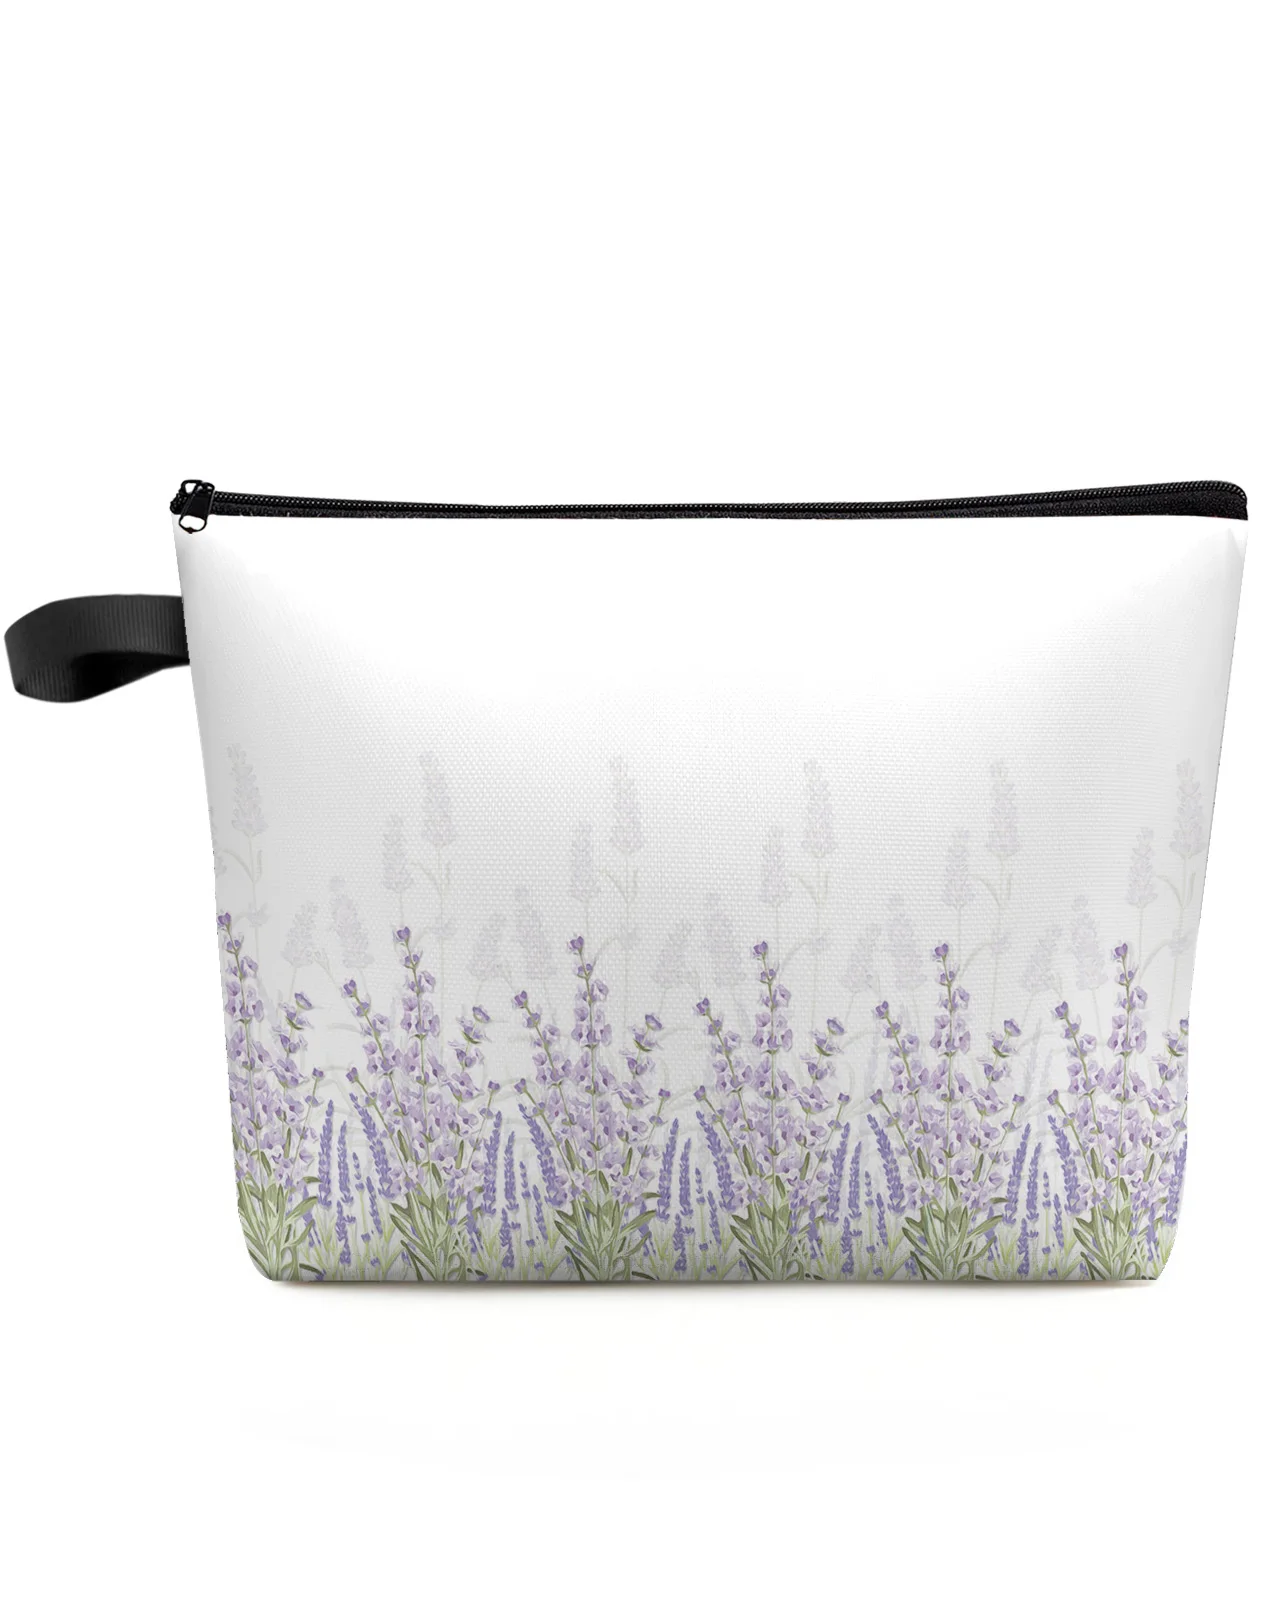 

Lavender Floral Vintage Makeup Bag Pouch Travel Essentials Lady Women Cosmetic Bags Toilet Organizer Kids Storage Pencil Case